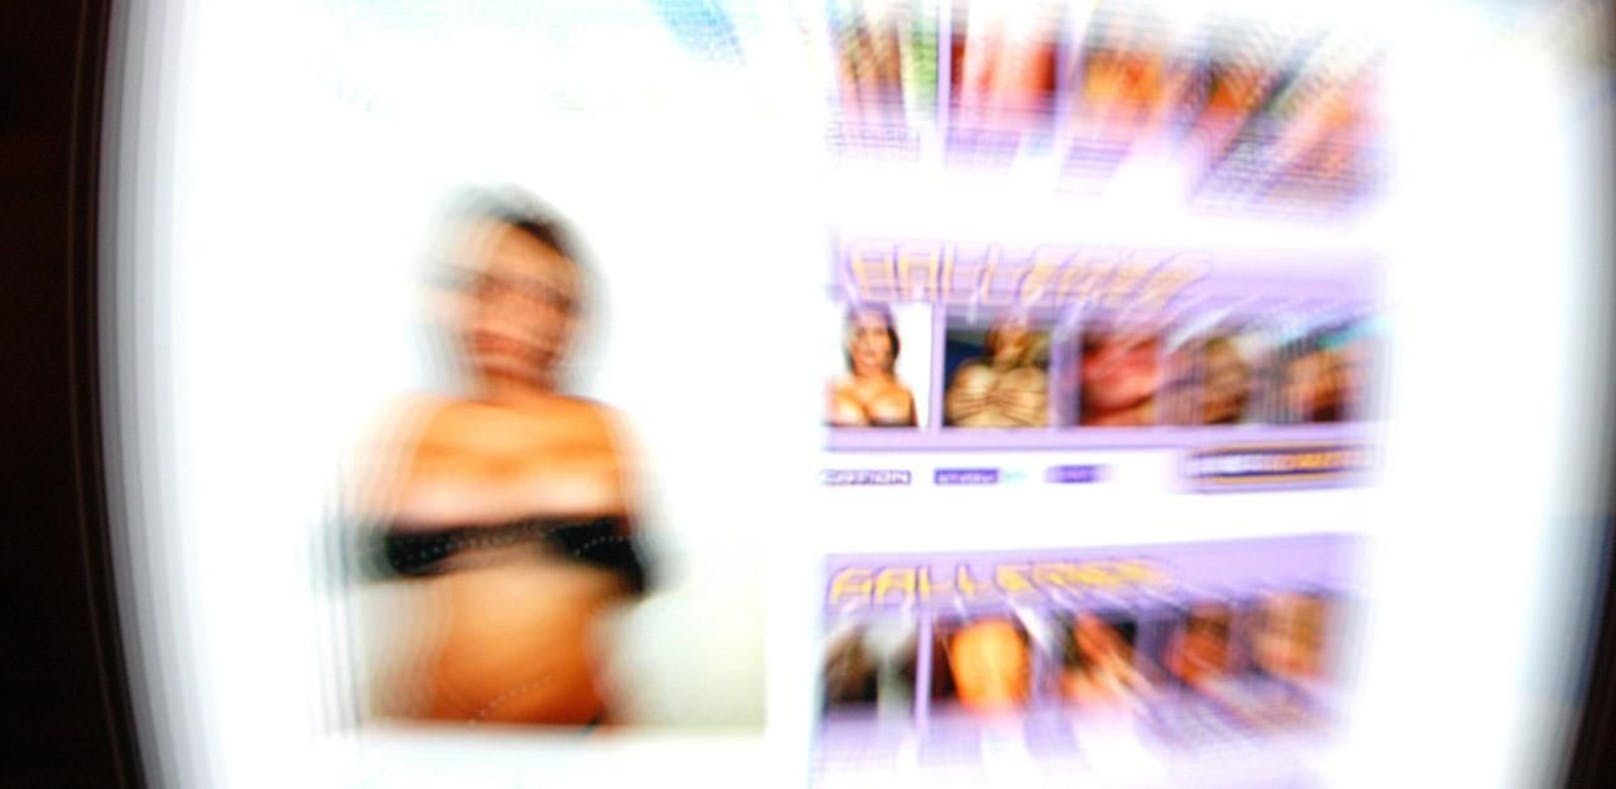 Statt Internet-Pornos gibt es mit der indischen App Vijay Nath Mishra Gebete und Gesänge.